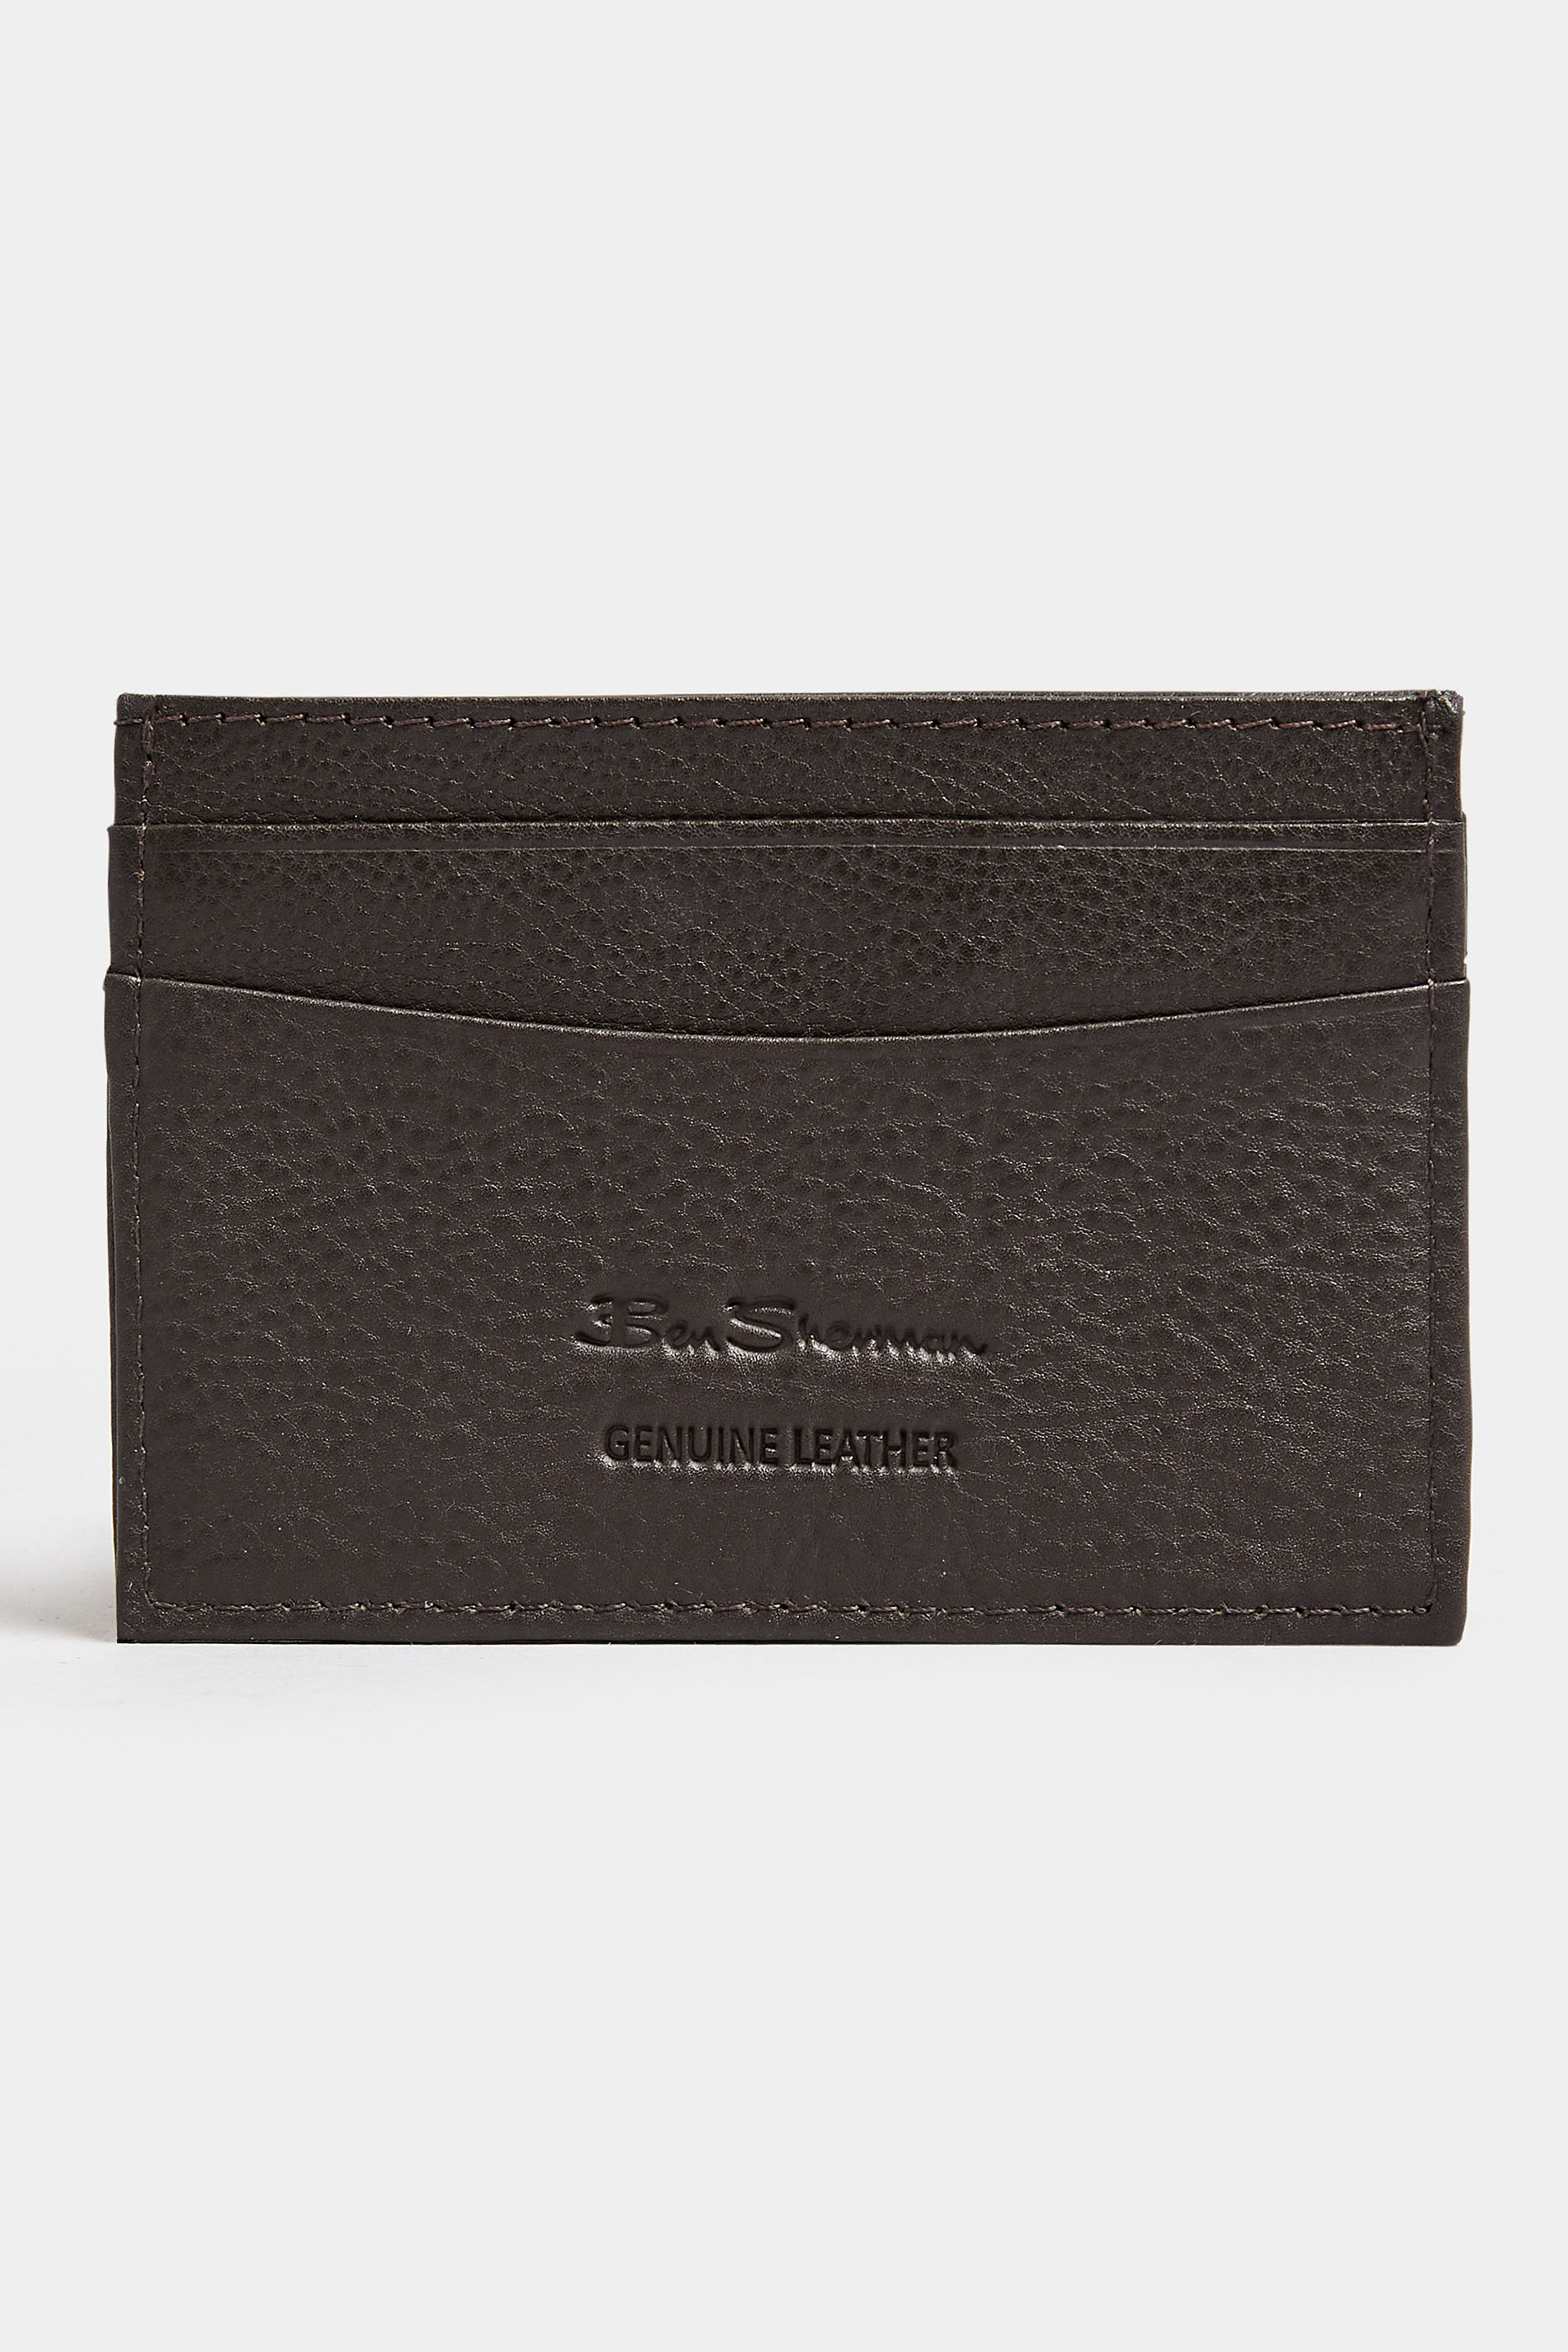 BEN SHERMAN Brown Leather 'Koki' Cardholder| BadRhino 2